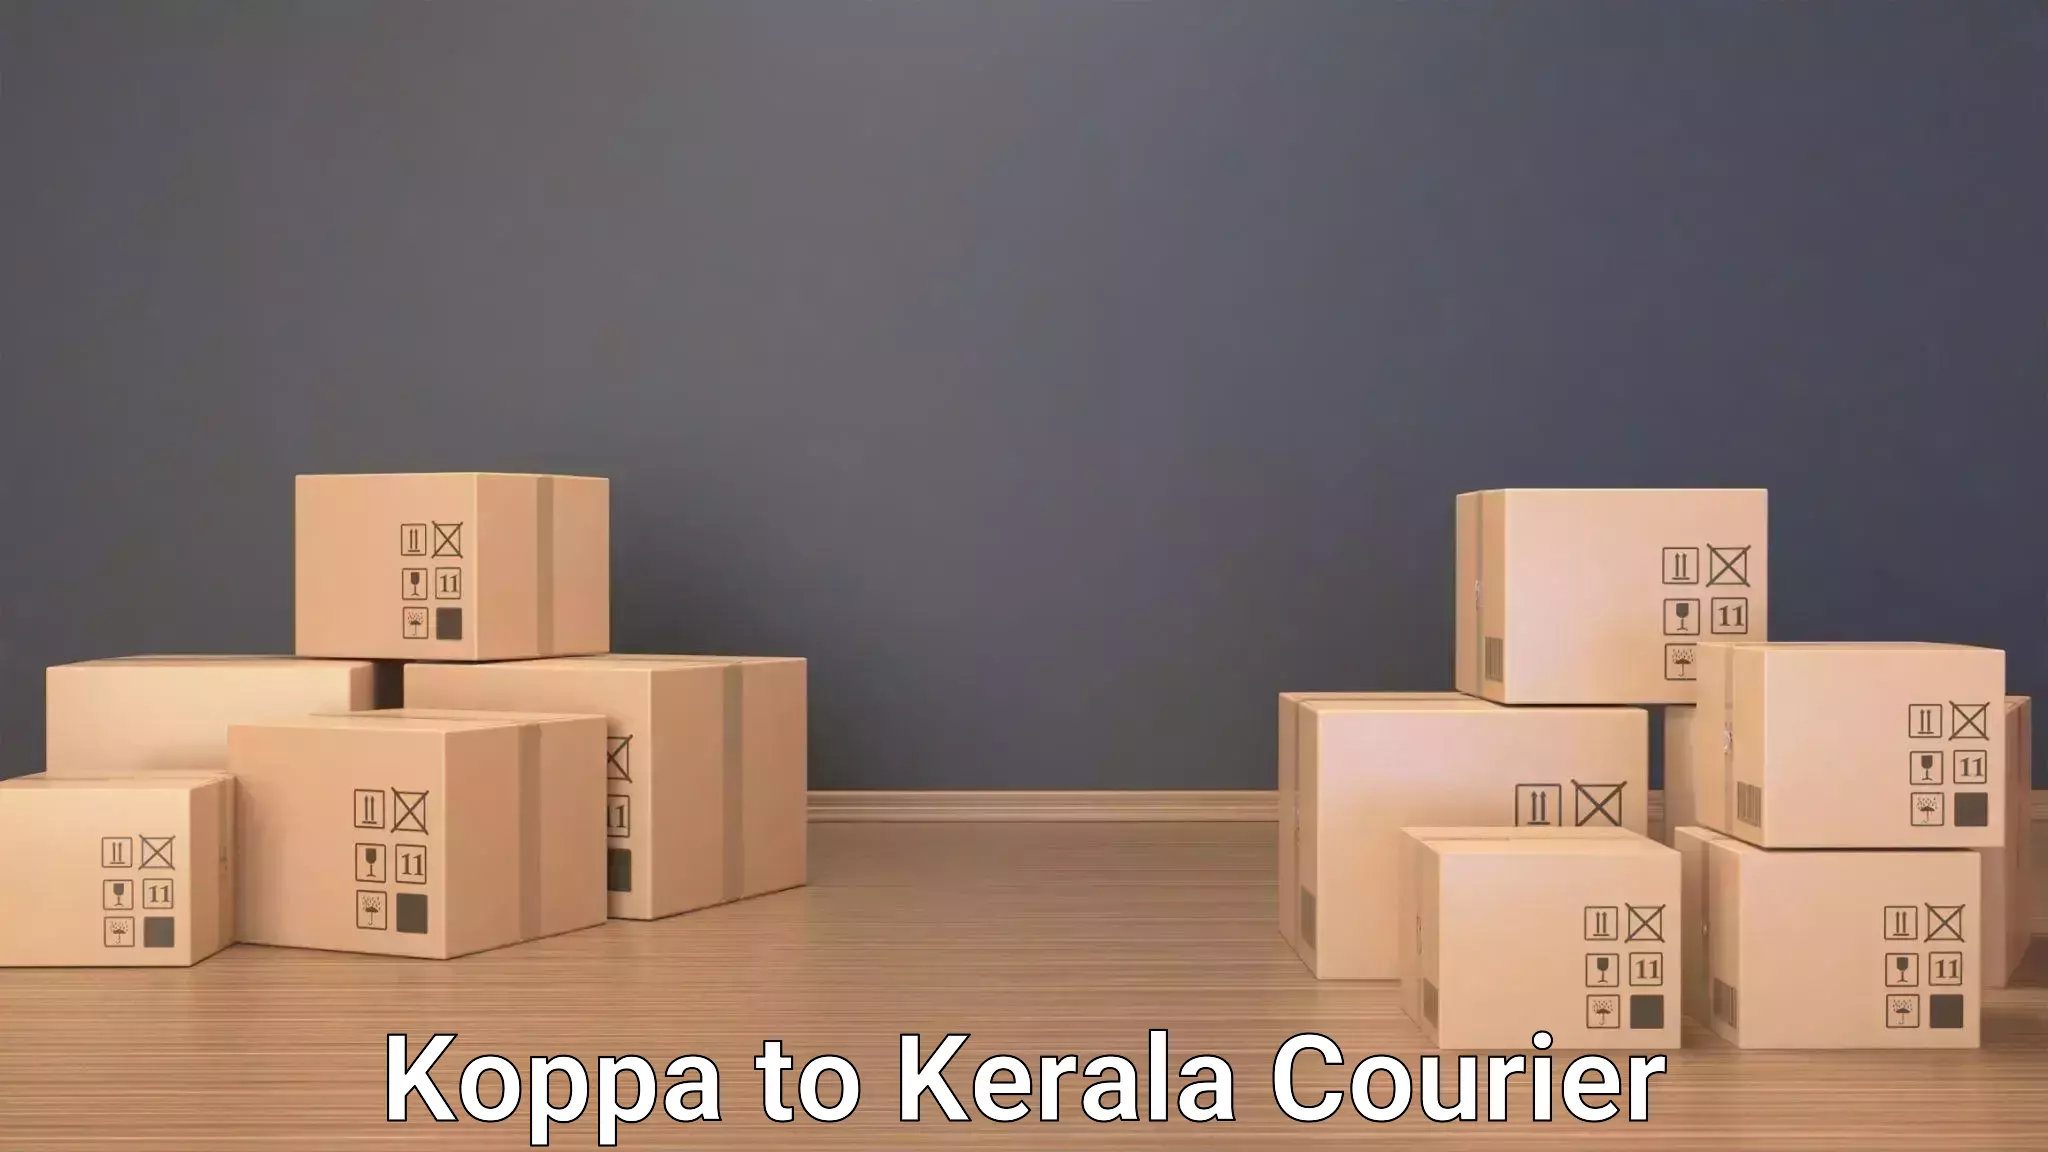 Baggage transport network Koppa to Kerala